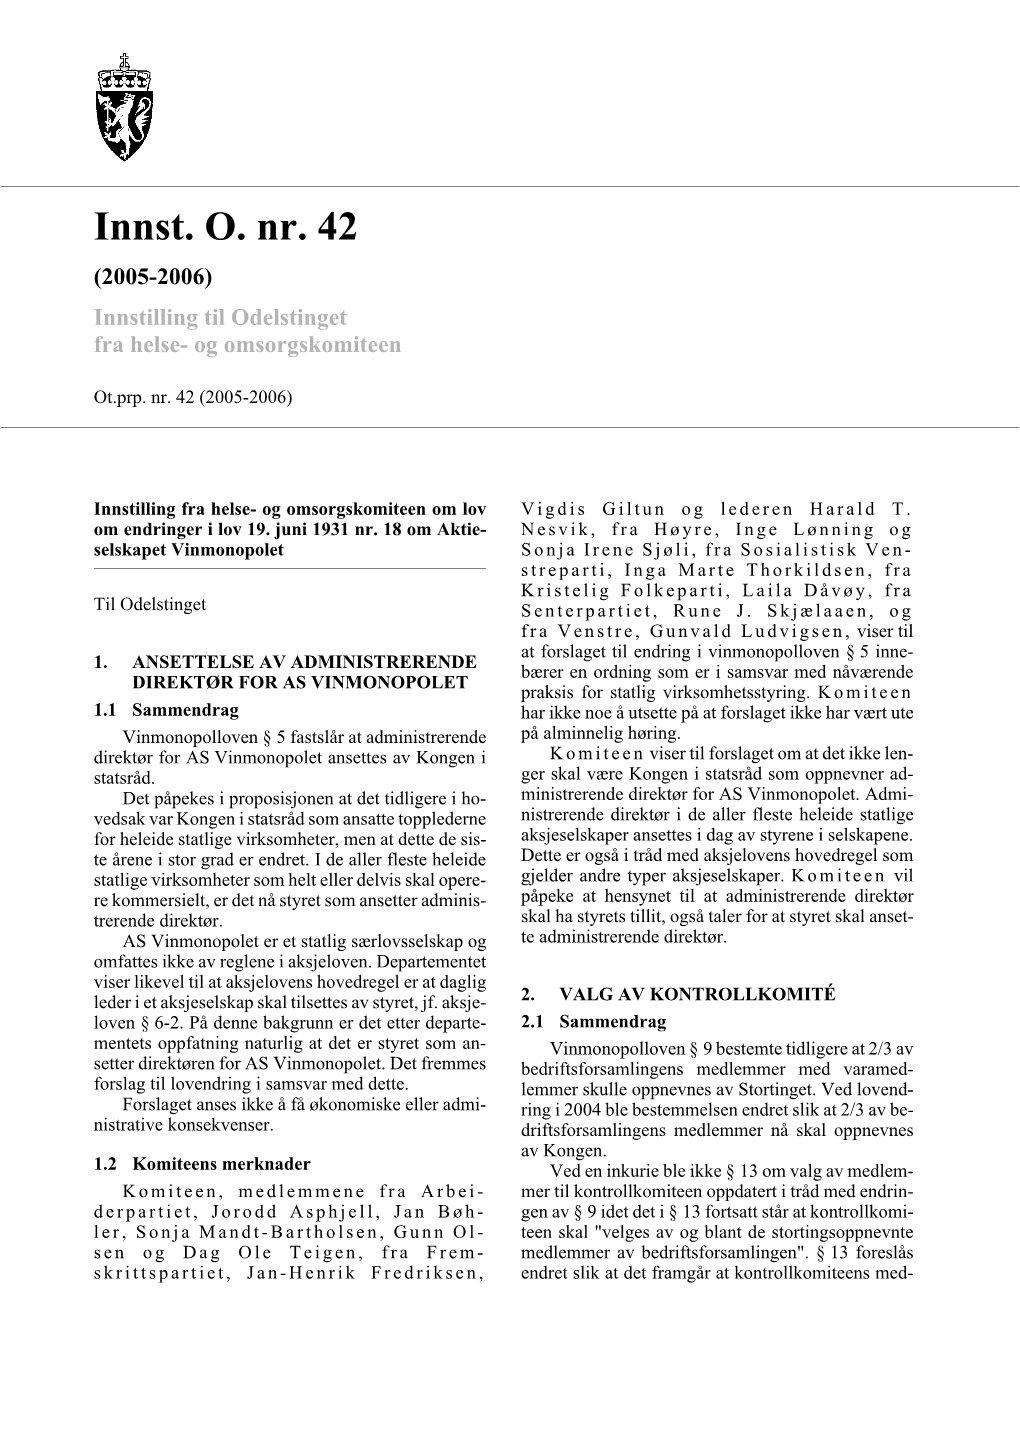 Innst. O. Nr. 42 (2005-2006) Innstilling Til Odelstinget Fra Helse- Og Omsorgskomiteen